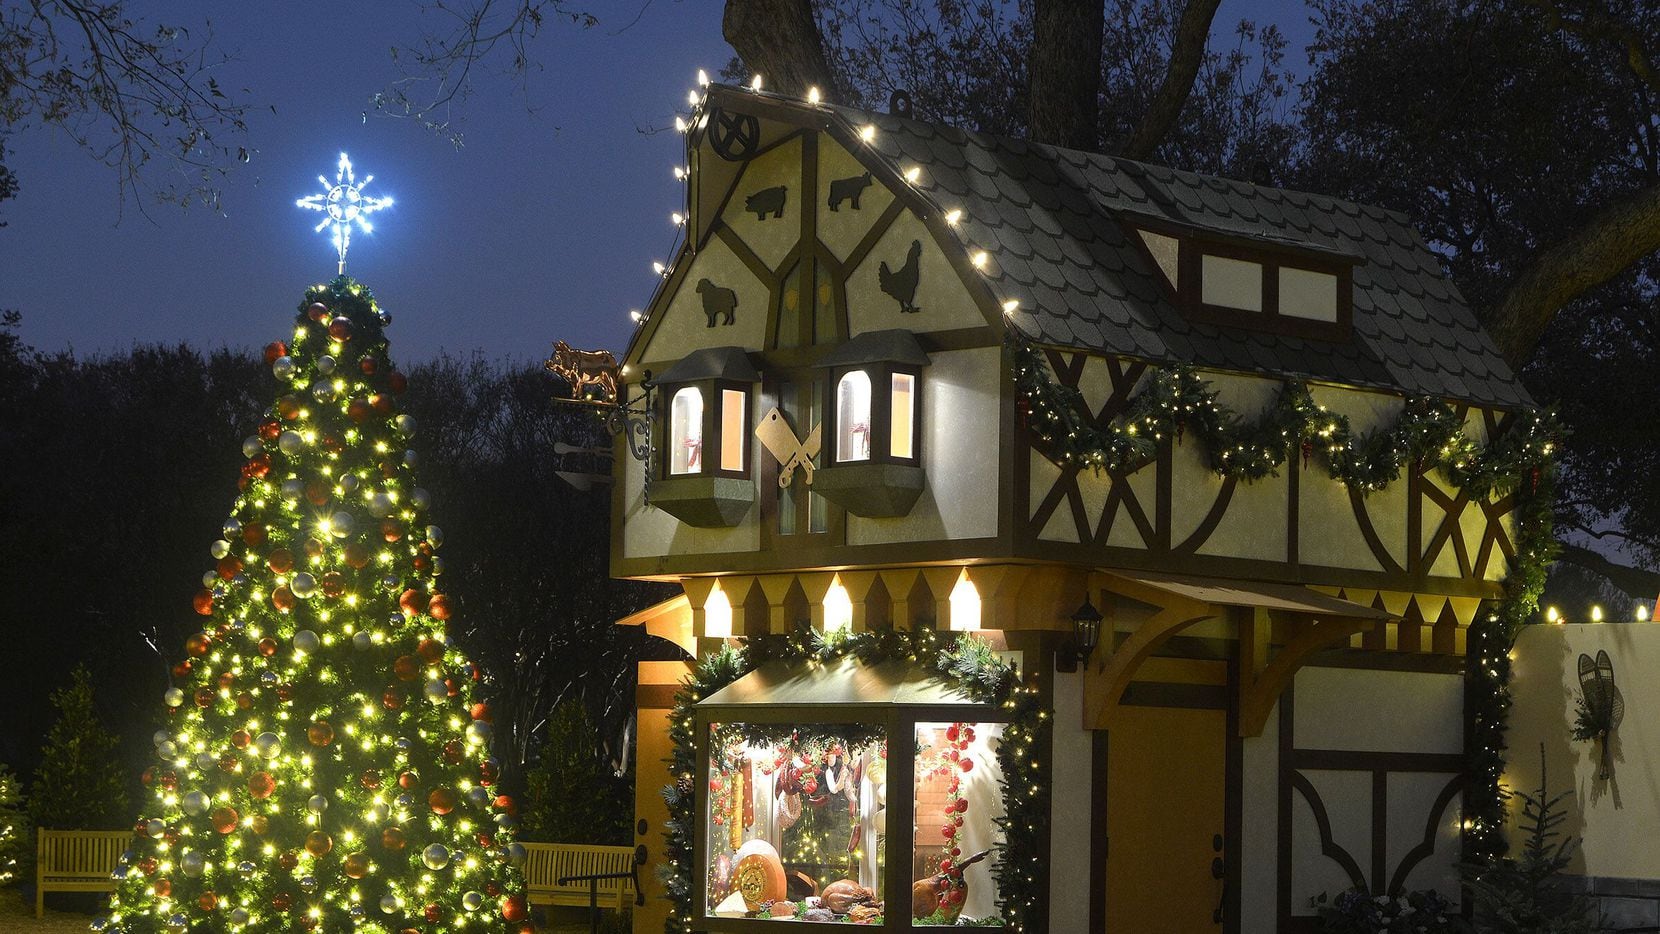 Una aldea navideña y la casa histórica DeGolyer decorada con  “Christkindlmarket Treasures” se unen a las 12 terrazas que están colocadas a los largo de los 66 acres del jardín.